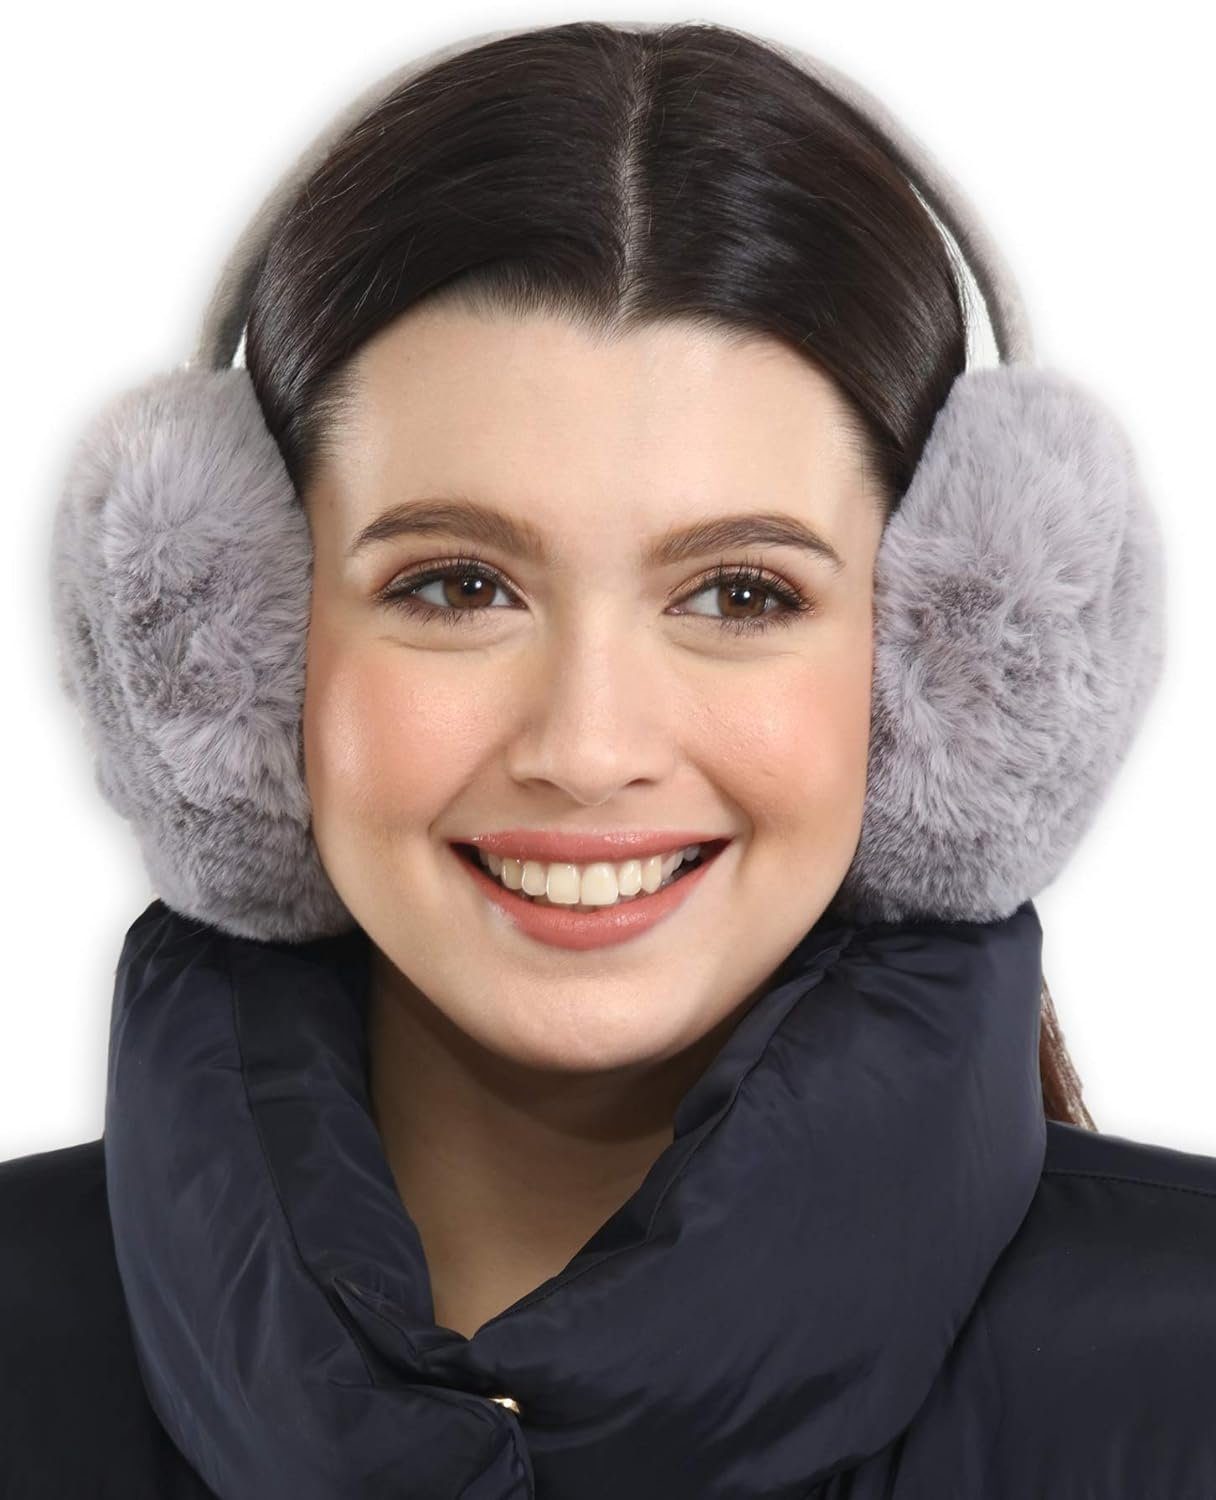 Ohrenwärmer für kaltes Grau Opspring Wetter Ohrenschützer,Winter-Ohrenwärmer,Ohrenschützer